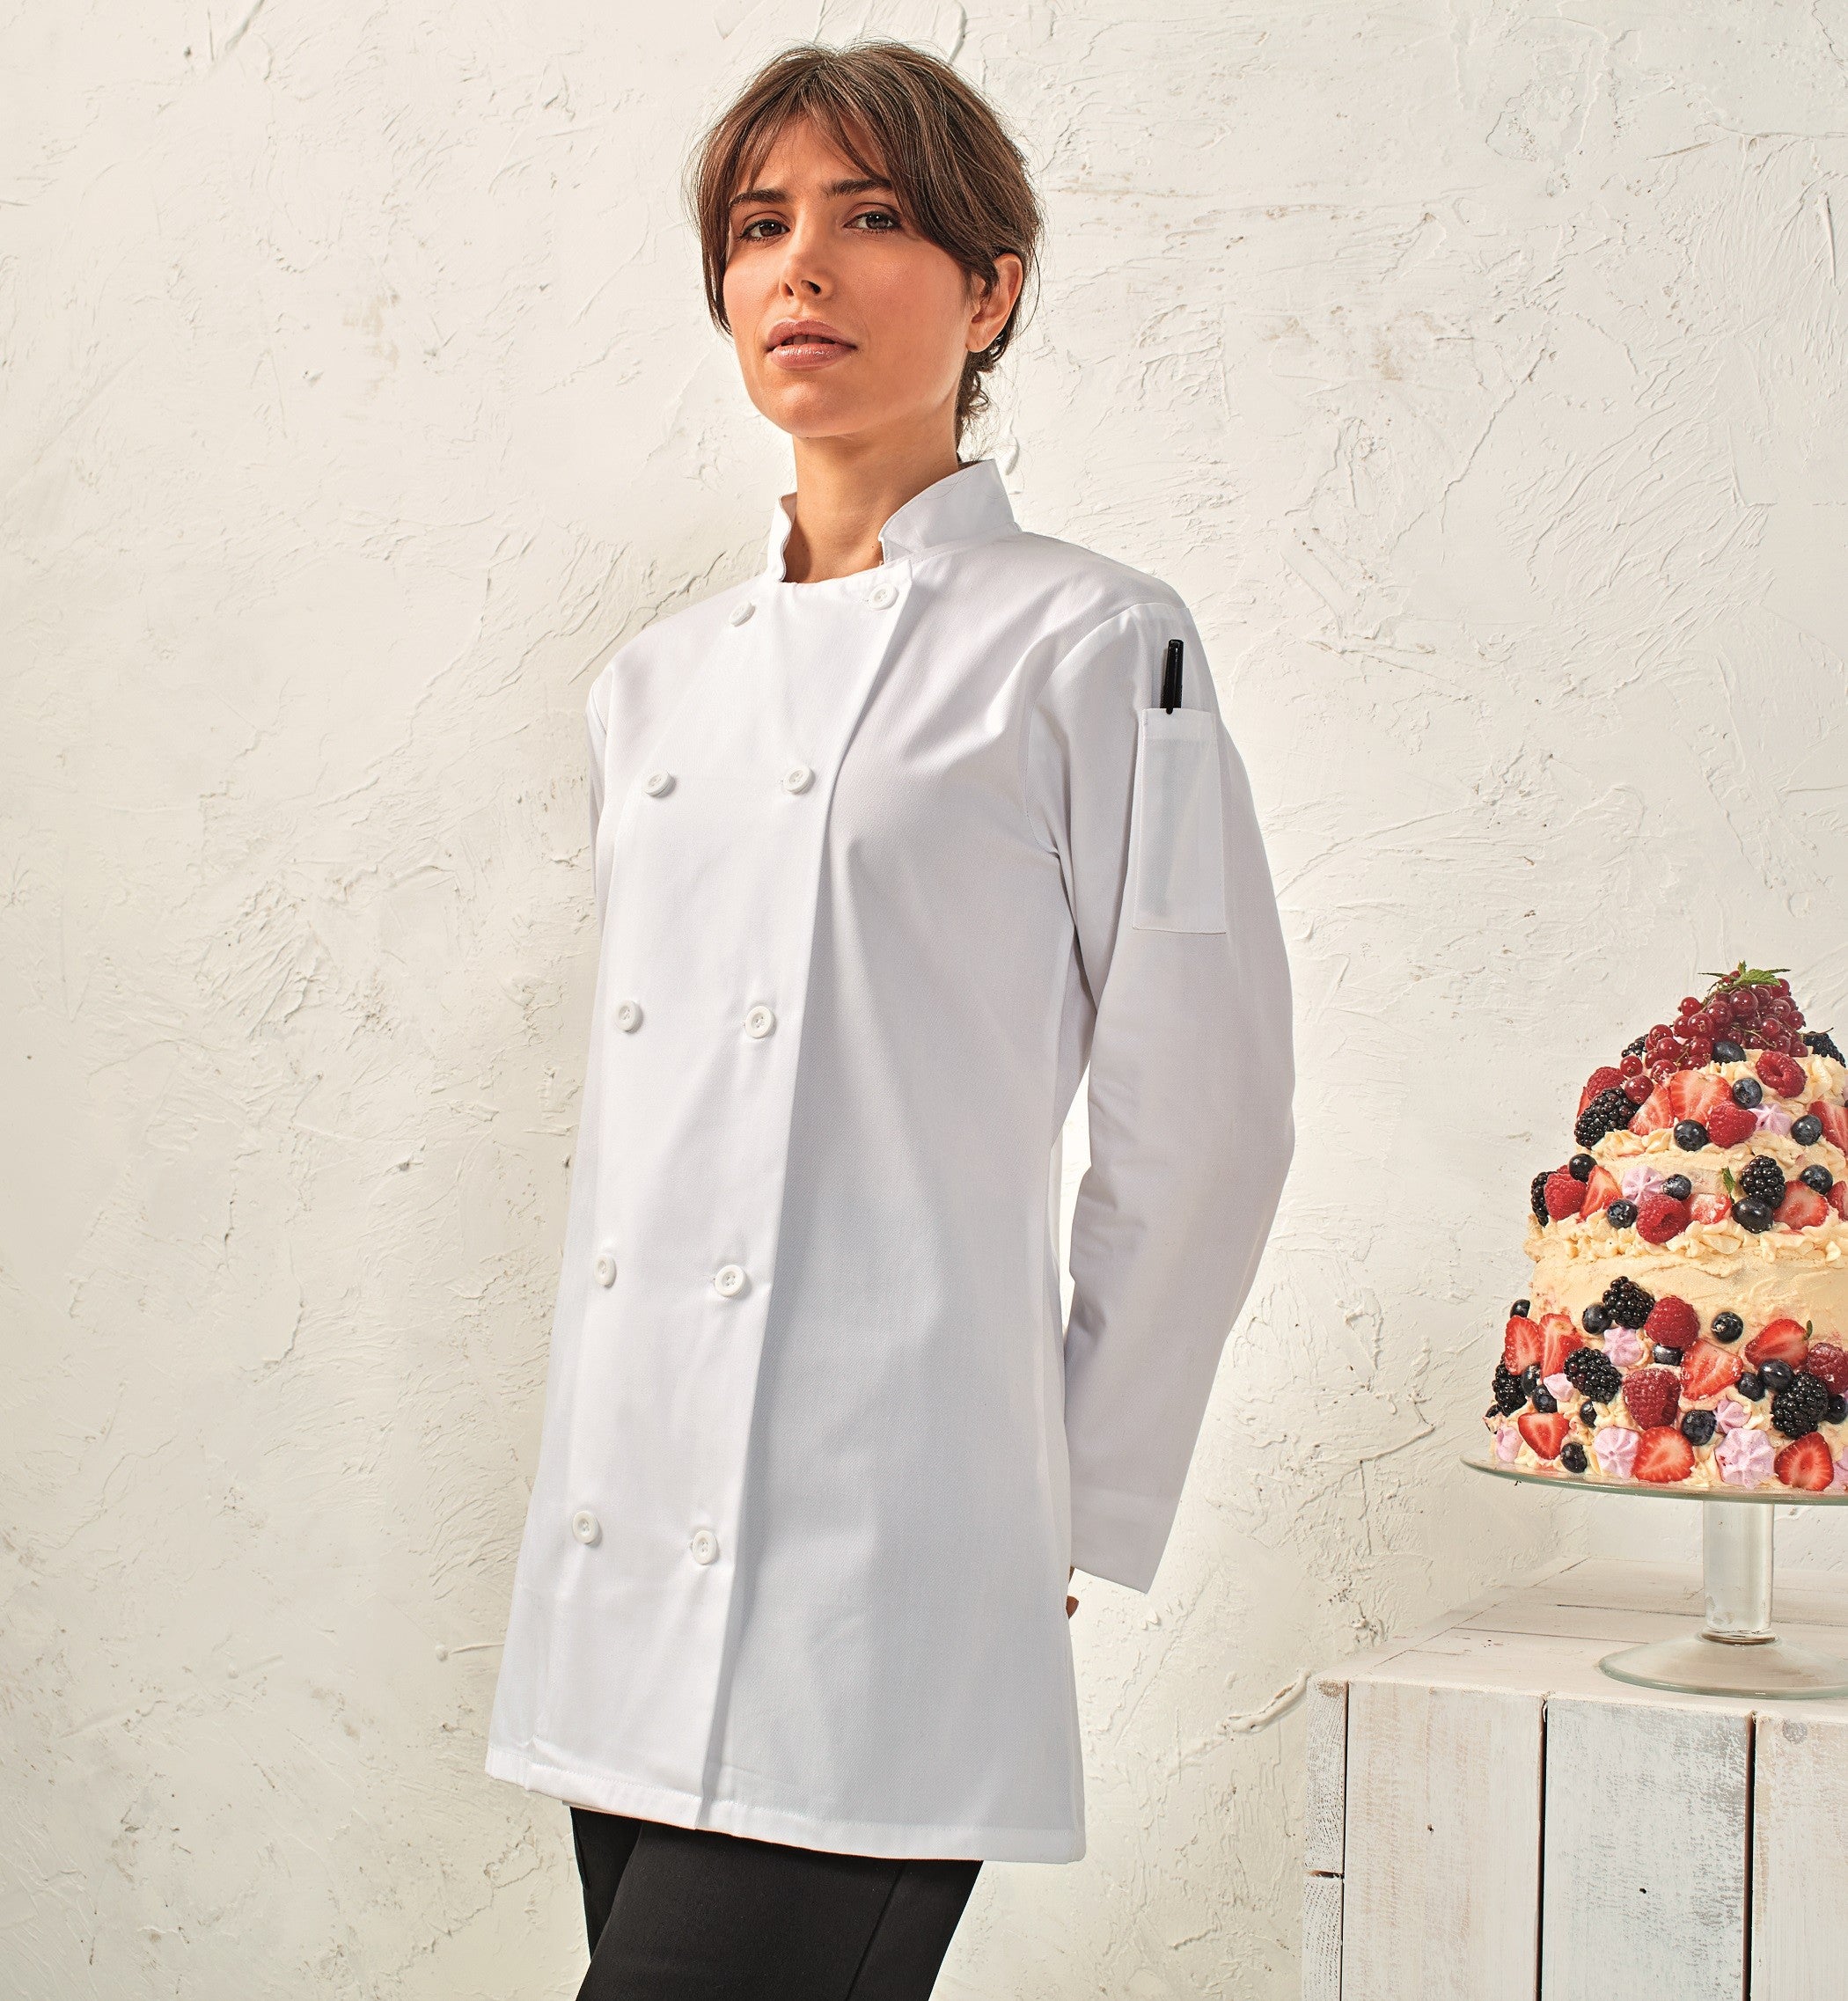 Women's Long Sleeve Chefs Jacket